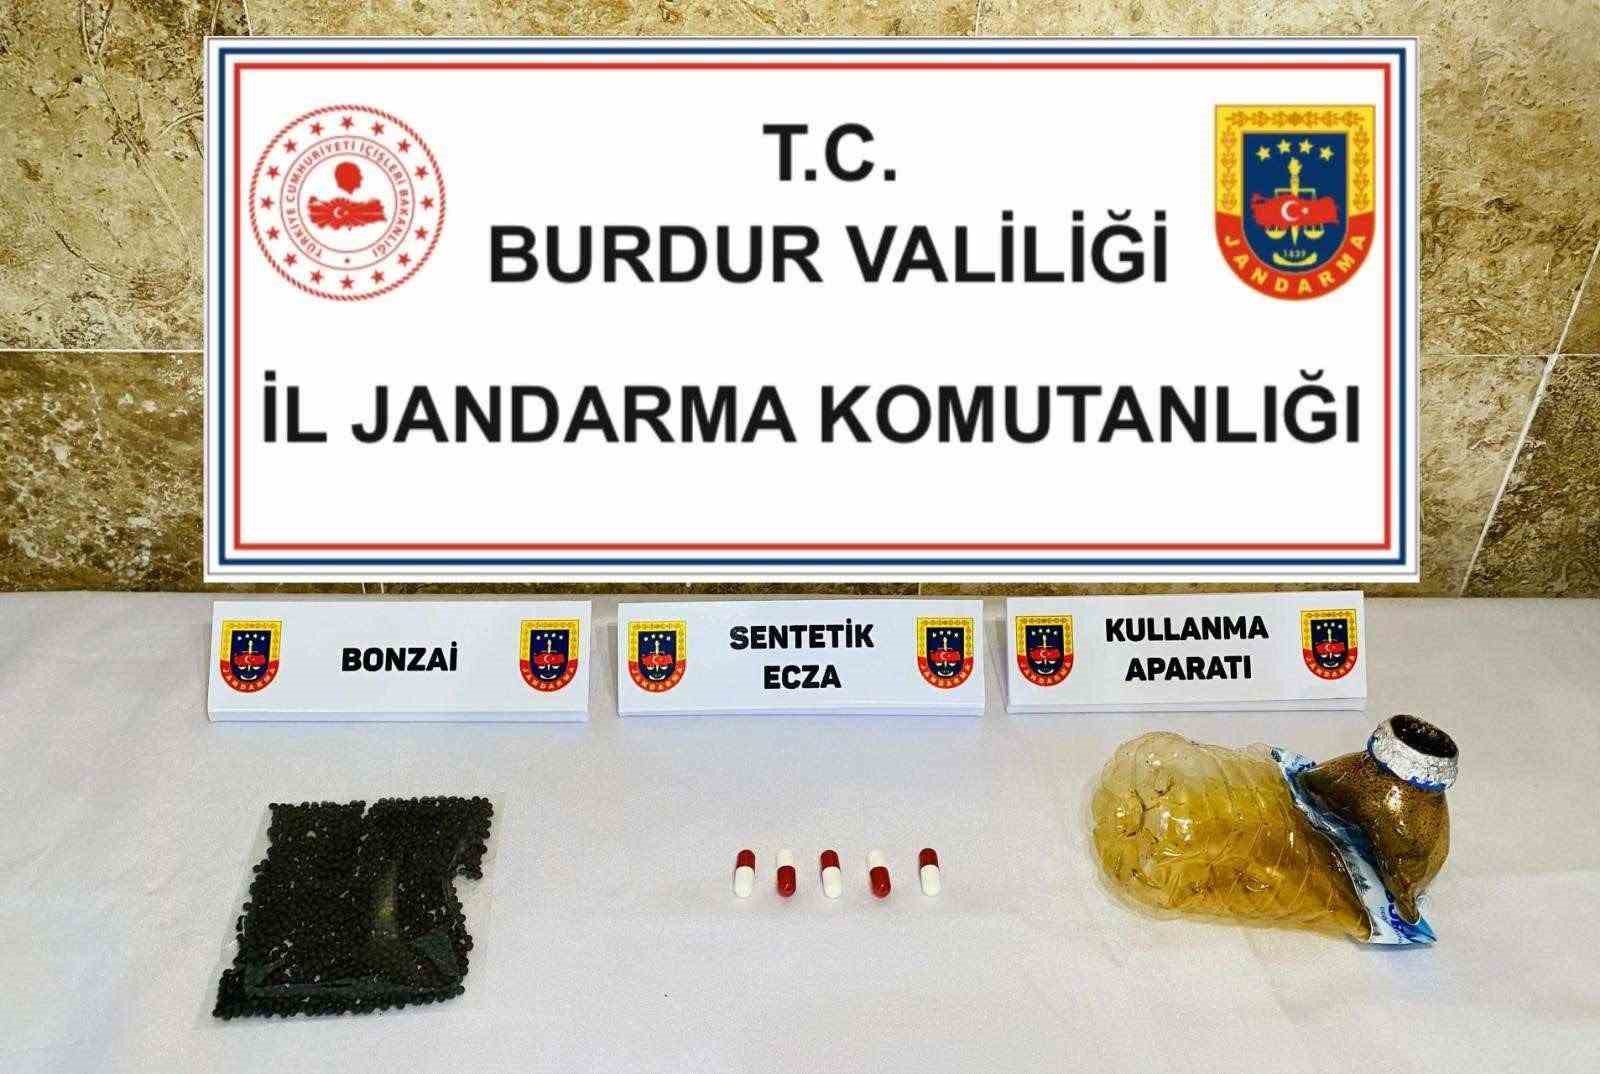 Burdur’da uyuşturucu ve kaçakçılık operasyonları: 2 şahıs tutuklandı
